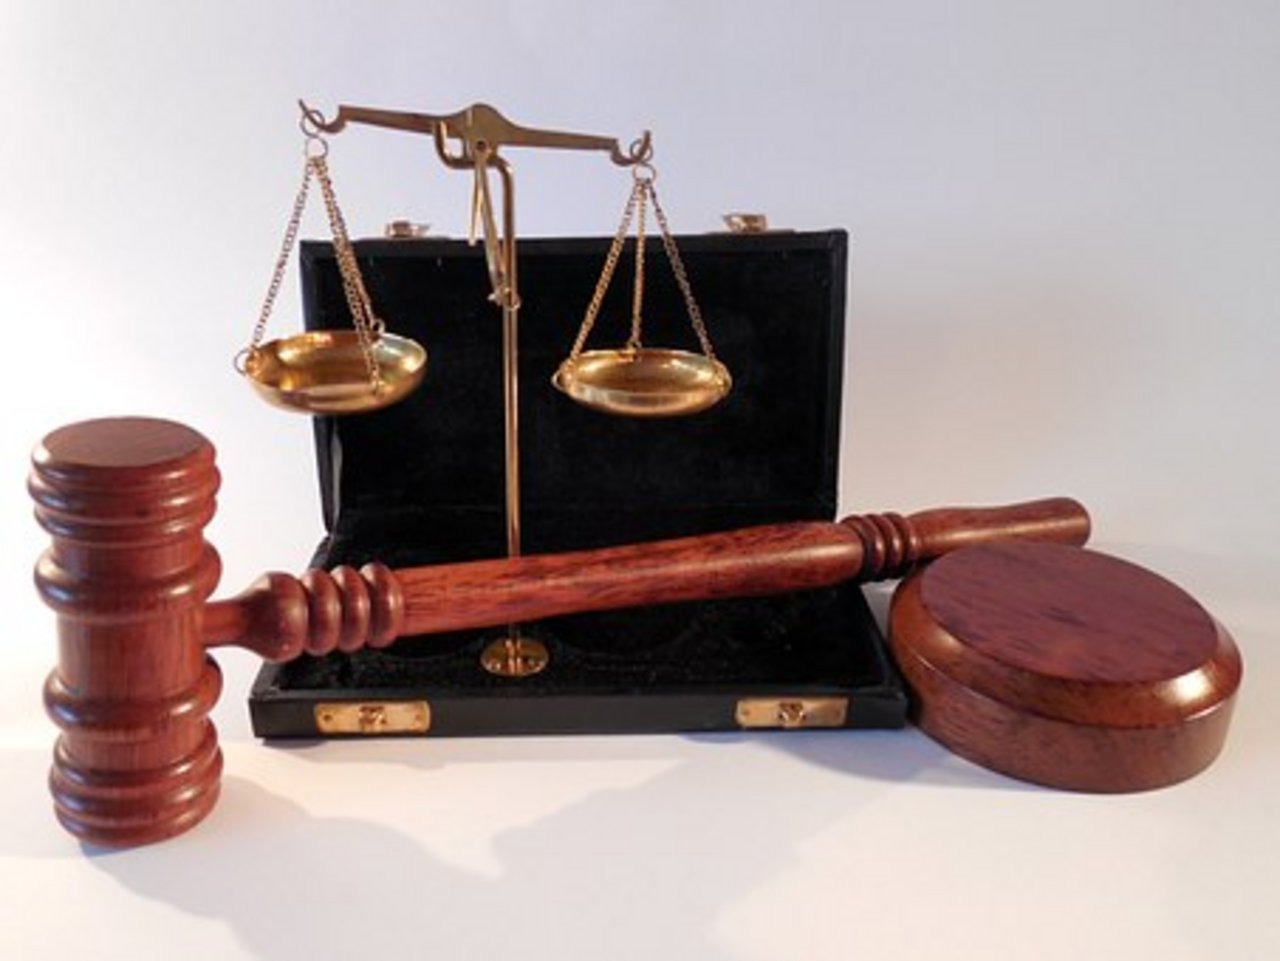 Der angeklagte Käser wirft vor Gericht alle Vorwürfe zurück. (Symbolbild Shutterstock)